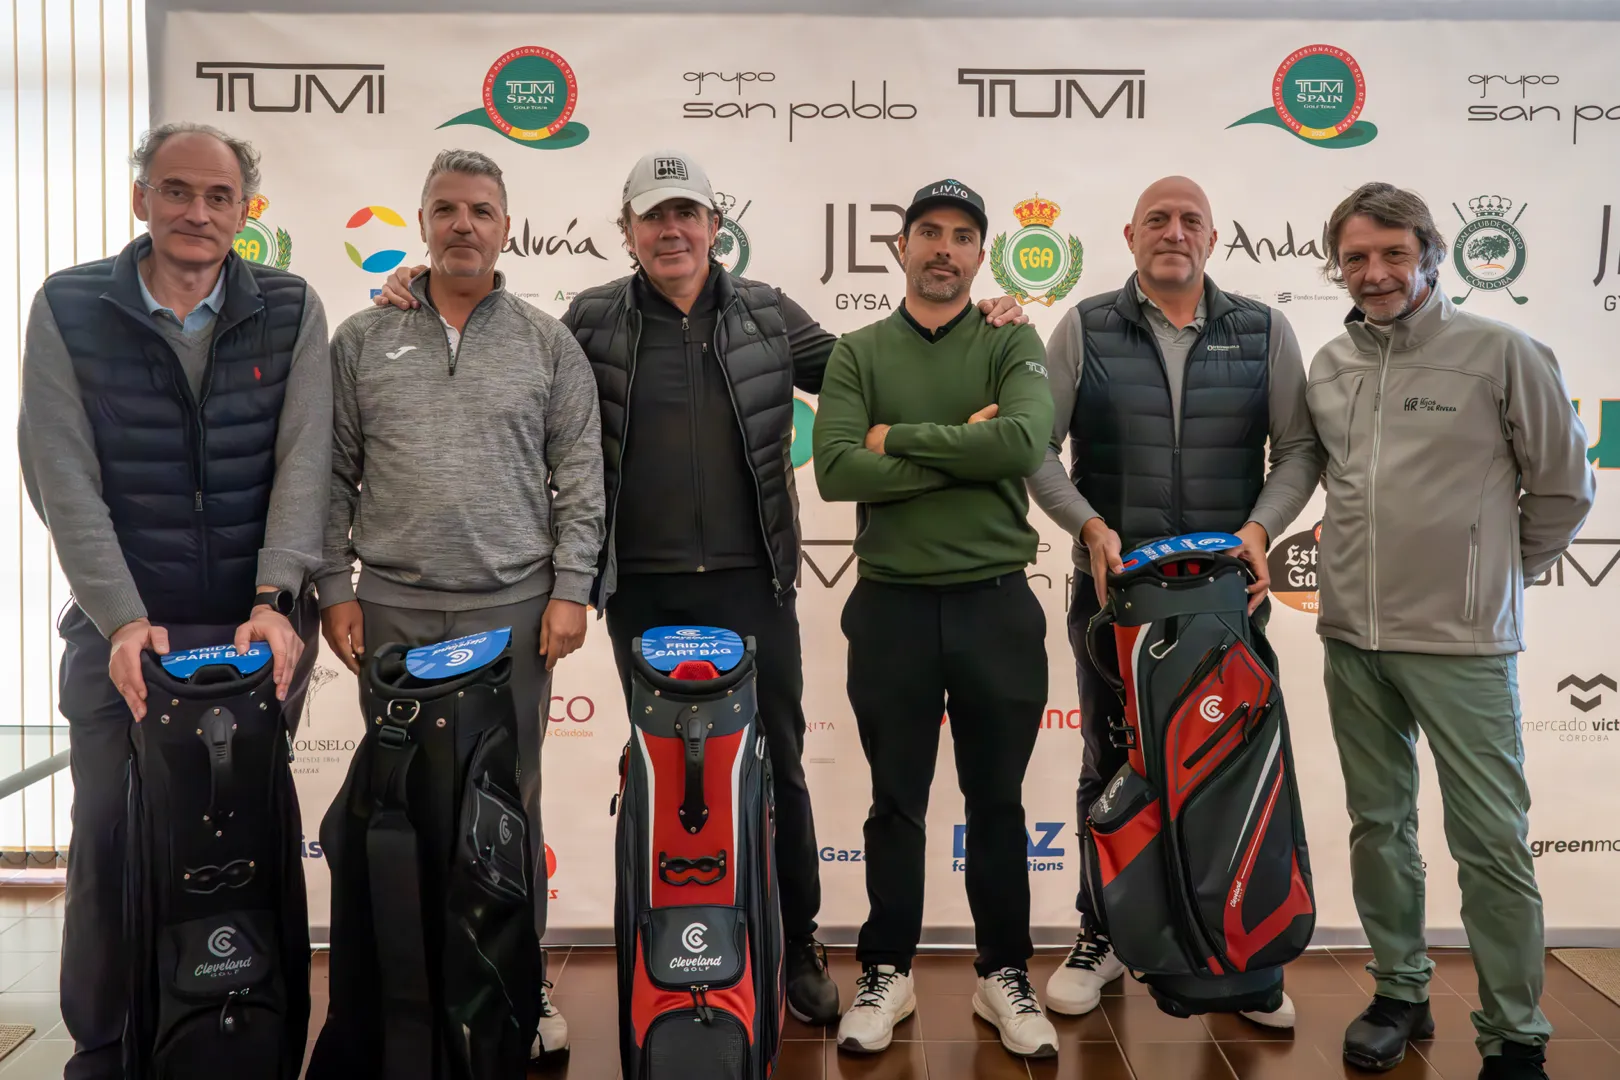 El equipo de Juan Salama se impone en el Pro-Am previo al XXXV Cto. de la PGA de España by Córdoba